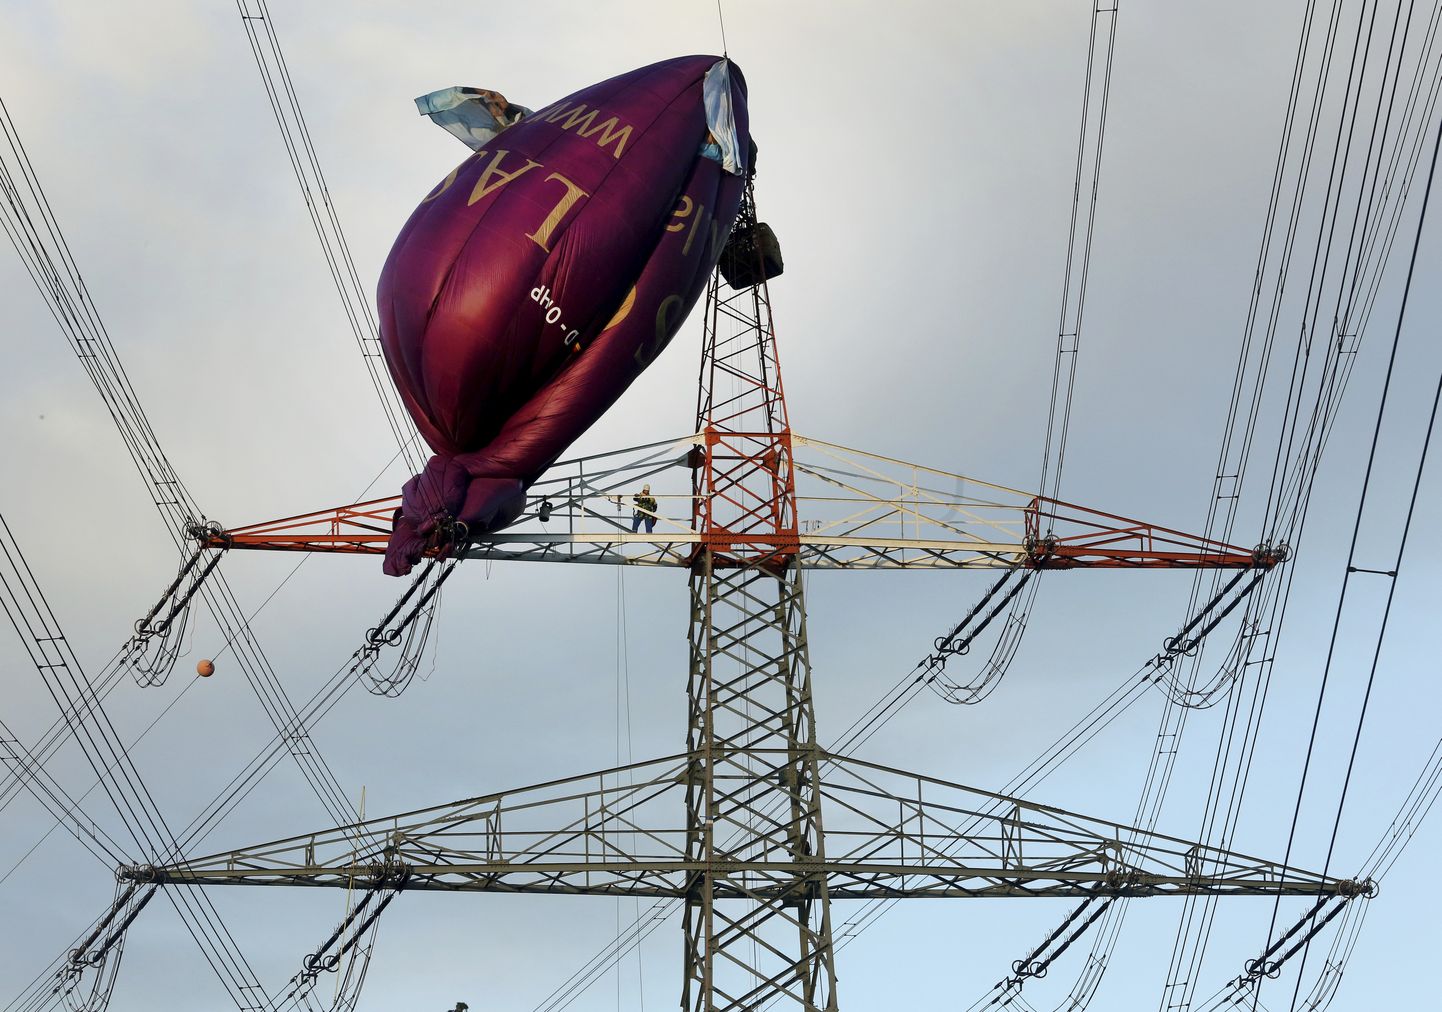 Kuumaõhupall elektriliinides Saksamaal Bottropi linnas. Õhusõidukis olnud kuus inimest pääsesid õnnetusest ehmatusega.